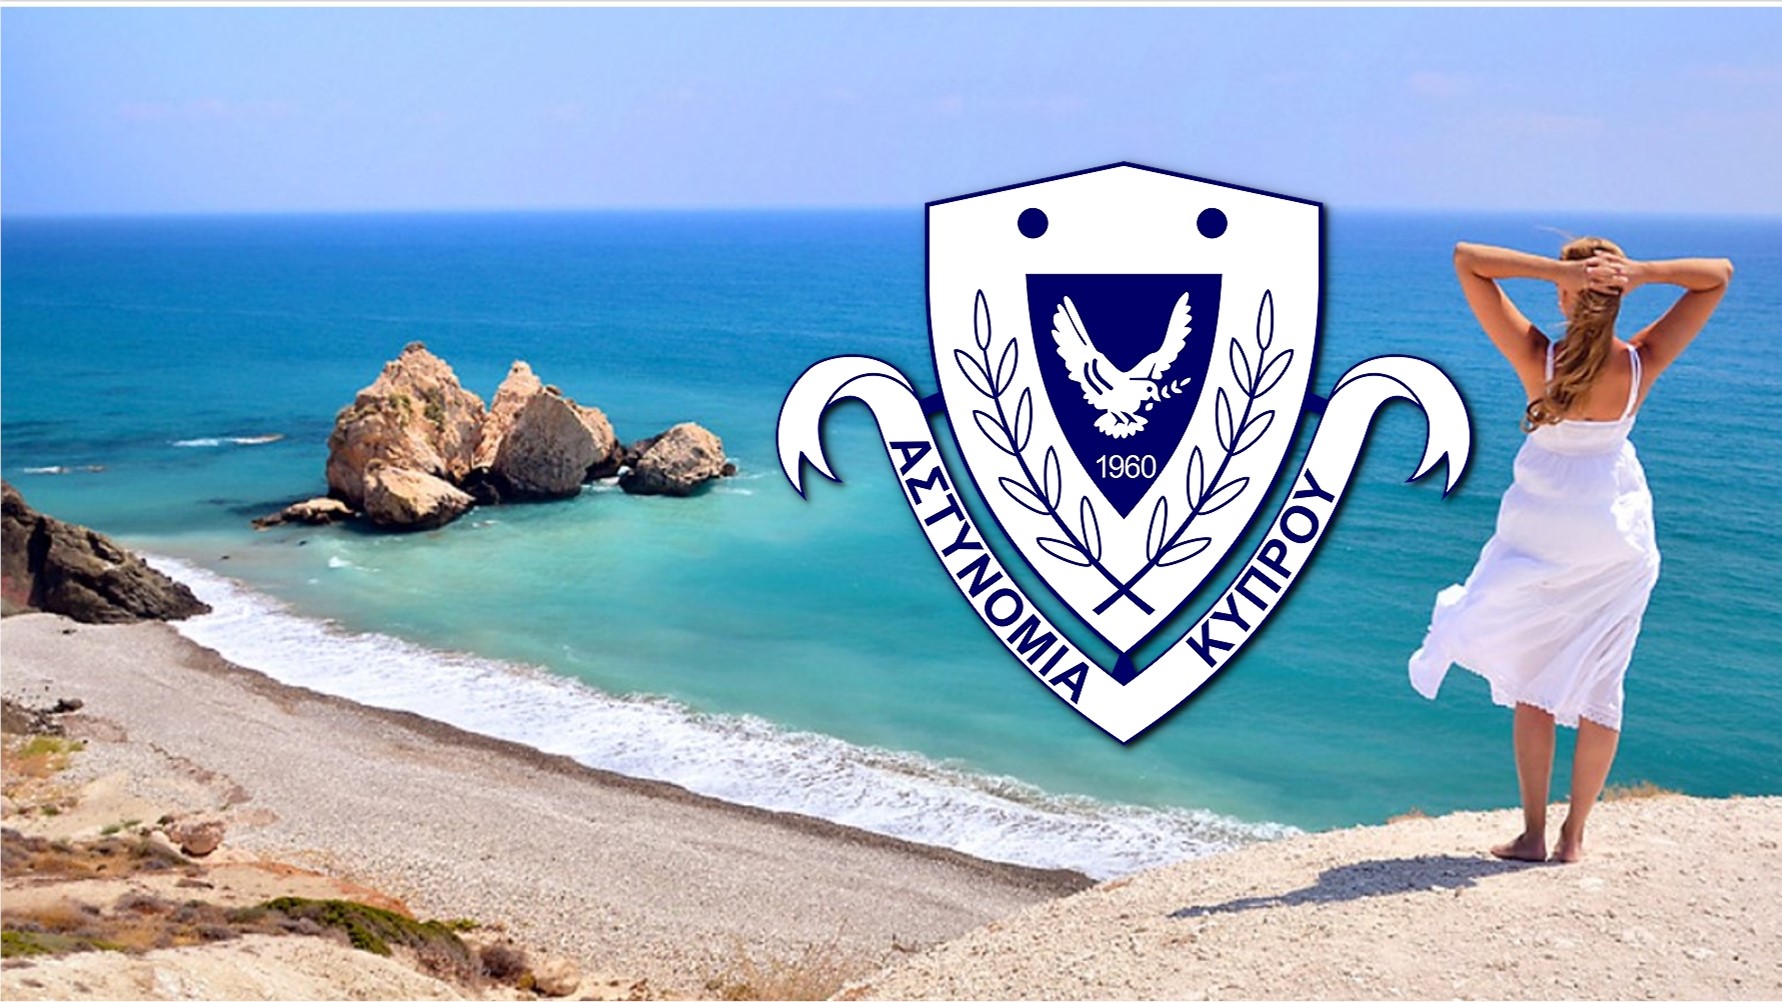 Αστυνομία Κύπρου: Συμβουλές και μέτρα προστασίας της περιουσίας κατά τη διάρκεια των διακοπών